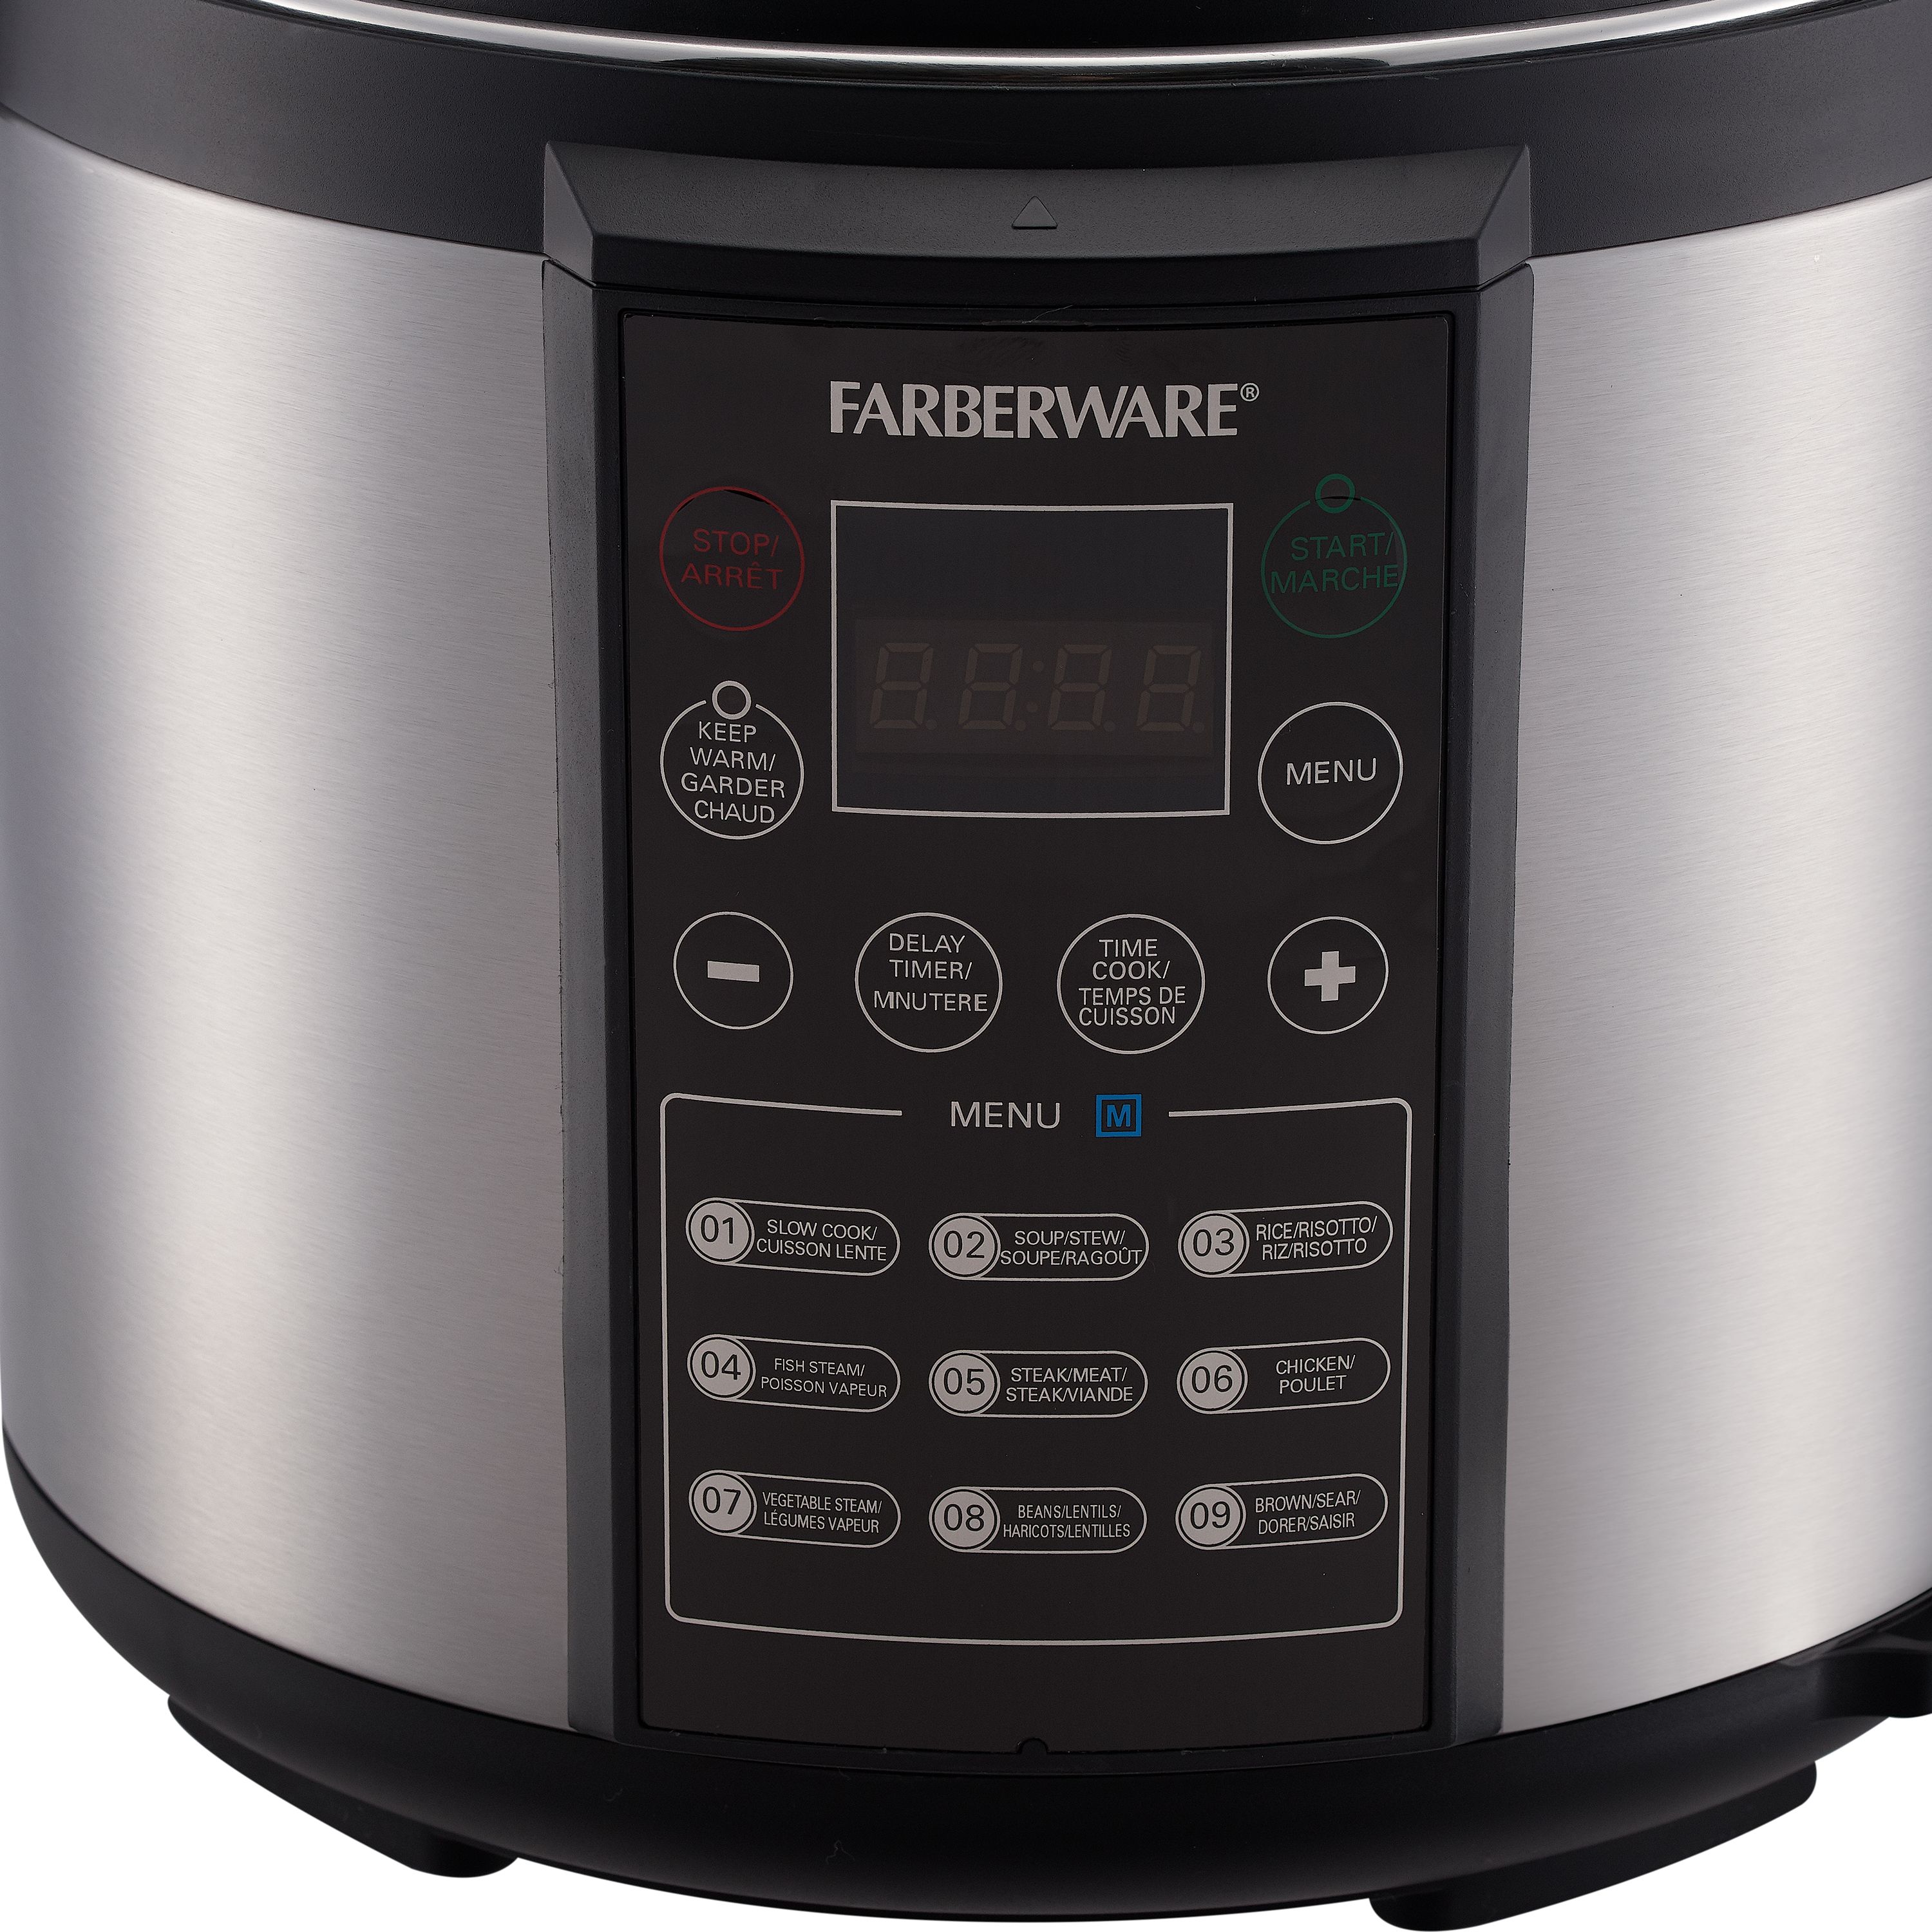 Farberware Programmable Digital Pressure Cooker, 6 Quart - image 5 of 6